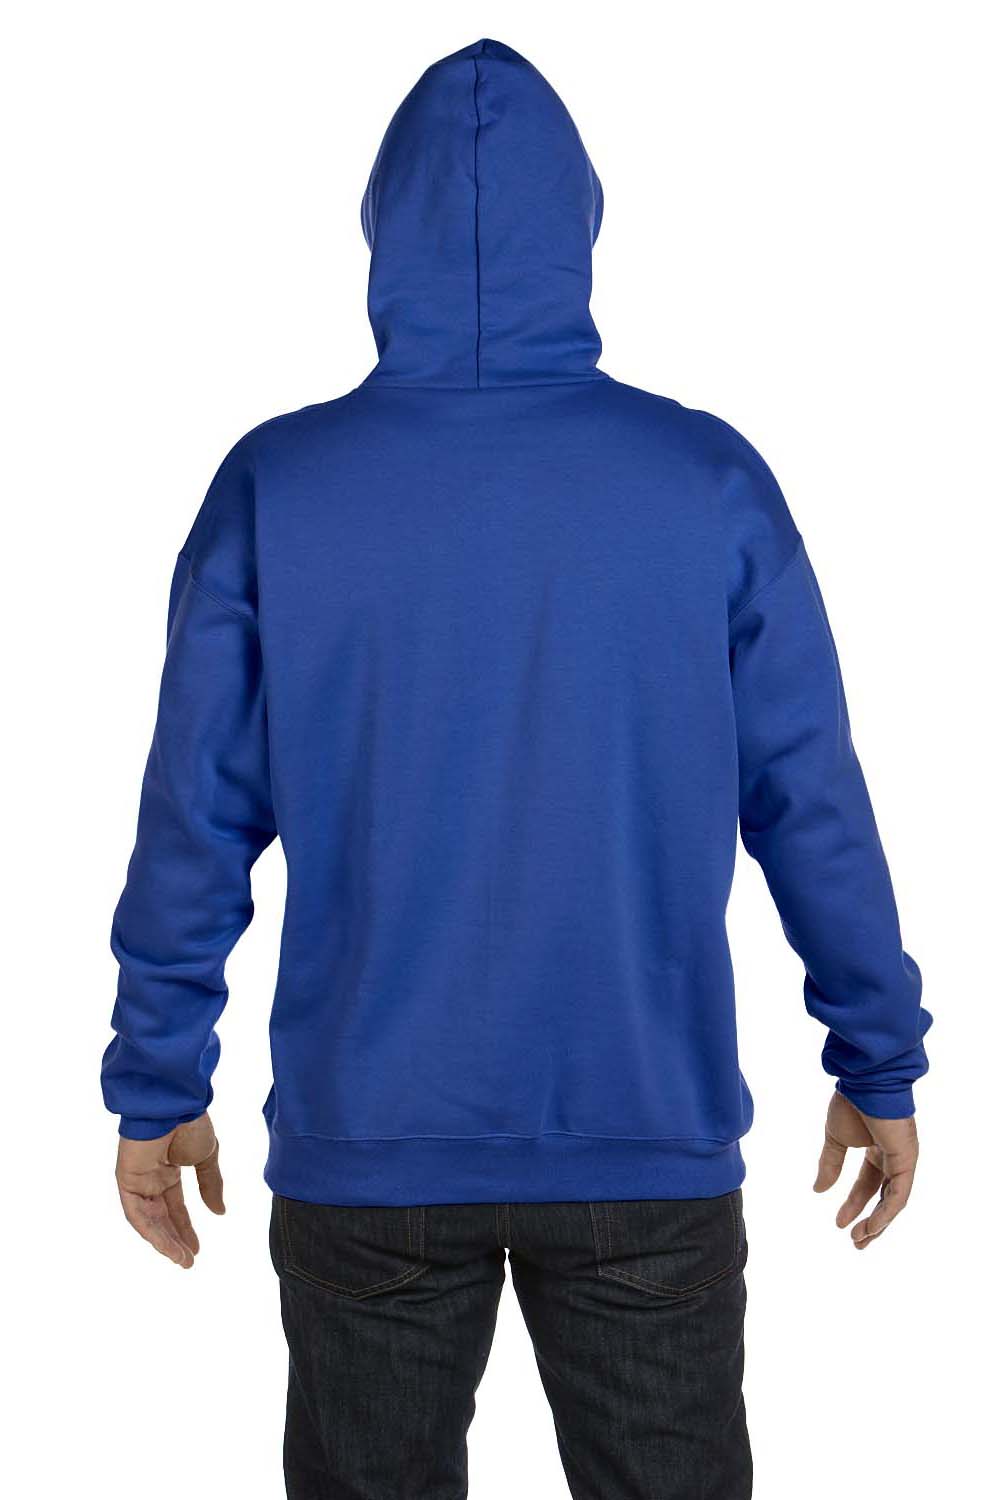 Hanes F170 Mens Ultimate Cotton PrintPro XP Hooded Sweatshirt Hoodie Royal Blue Back